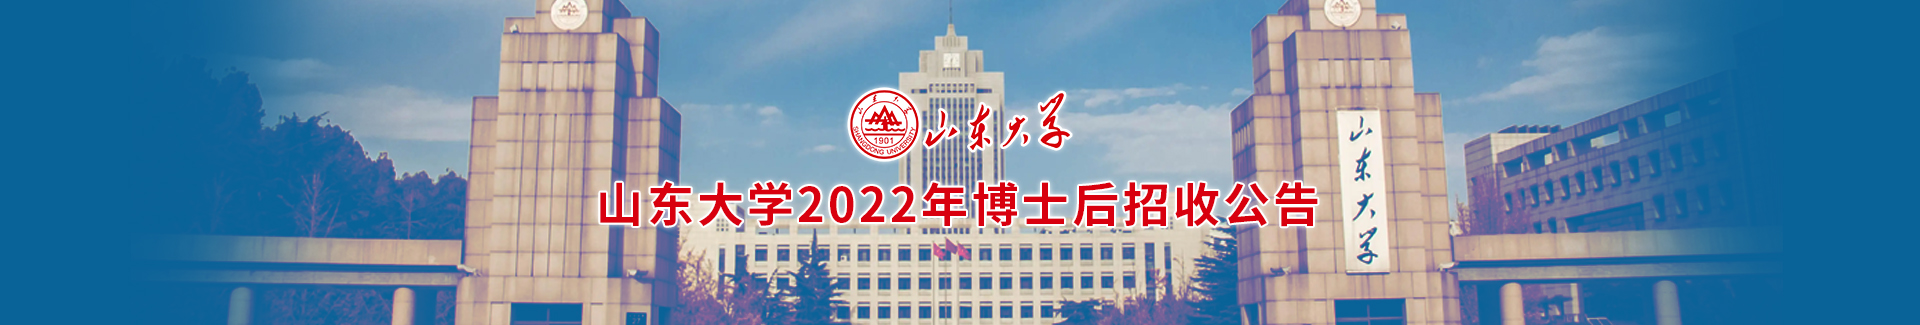 山东大学2022年博士后招收公告